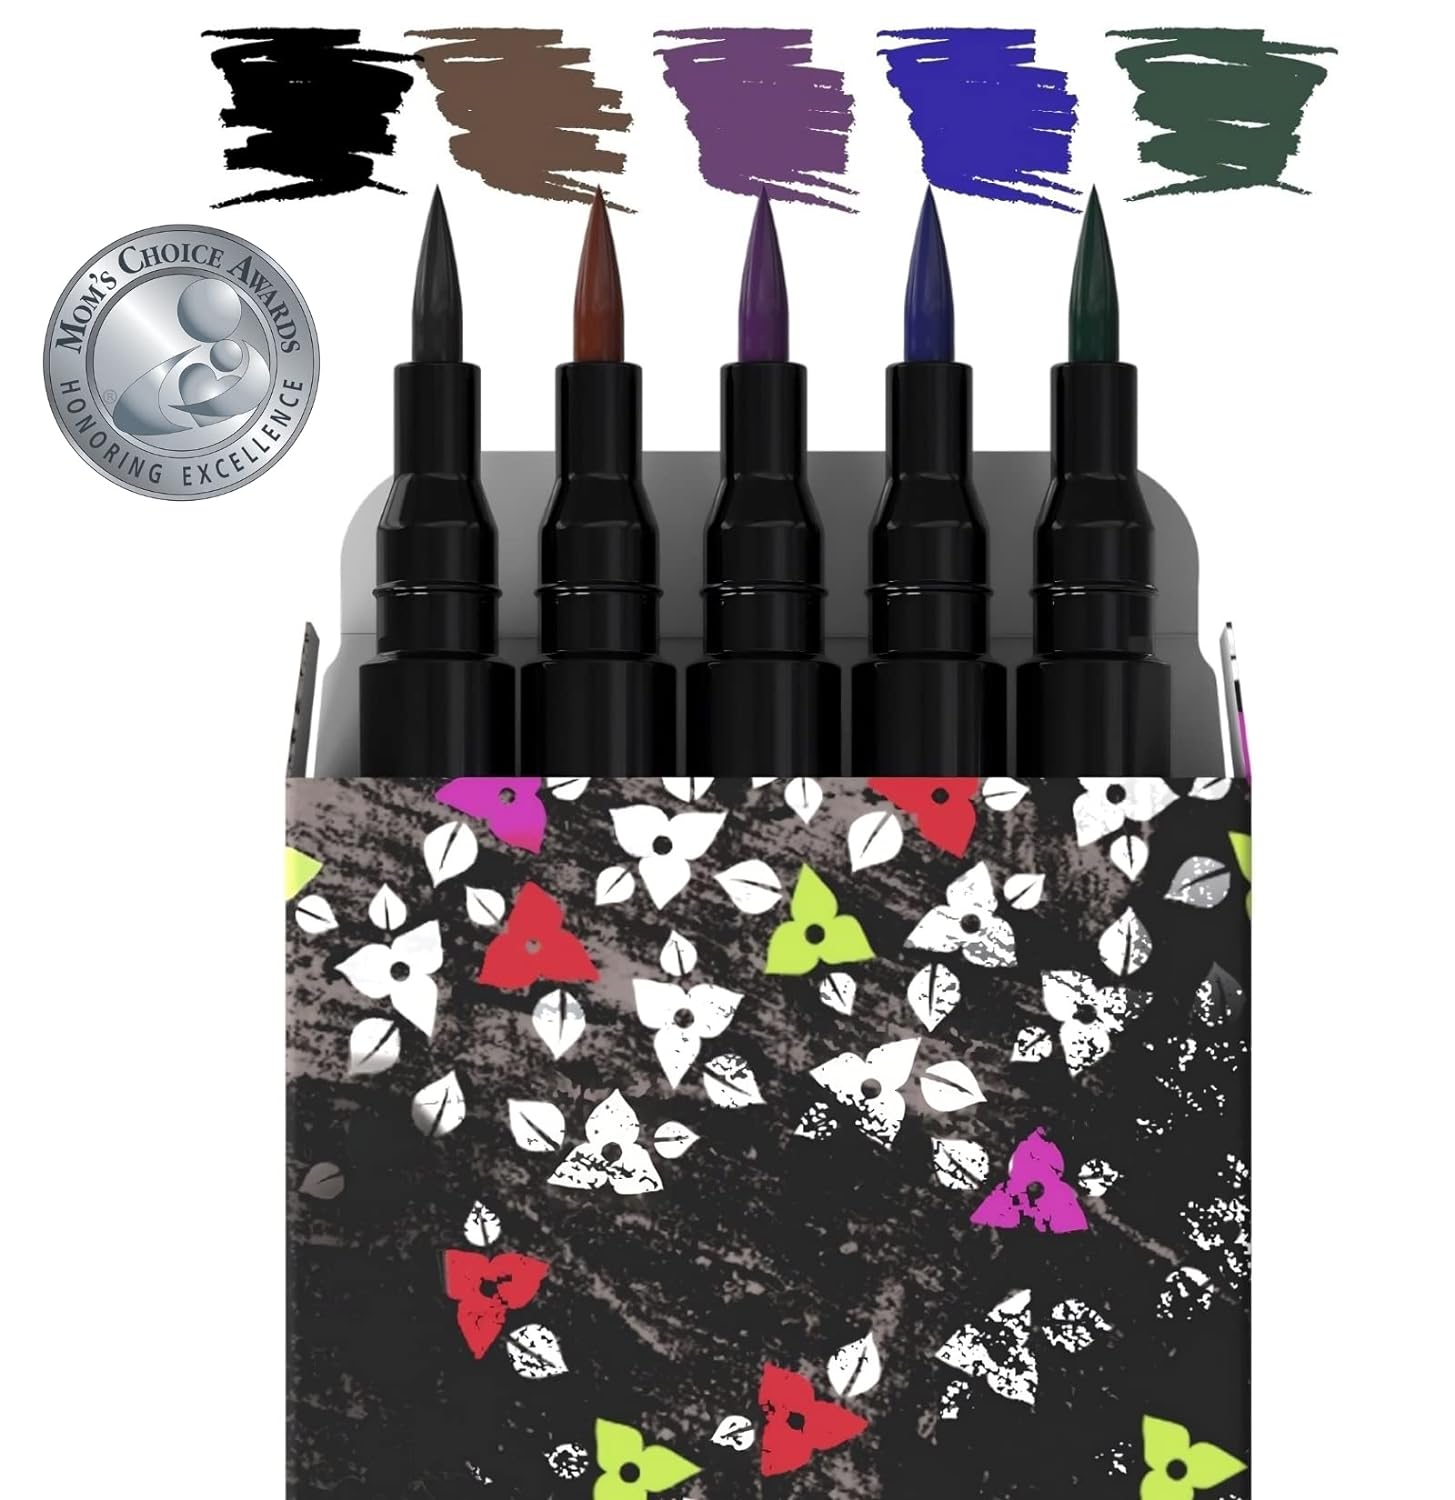 Nikka Notto Cosmetics Liquid Eyeliners Waterproof 5 Colors Eyeliner Set (Mom's Choice Award® Winner 2023) Black, Brown, Blue, Green & Purple DeLuxe Kit